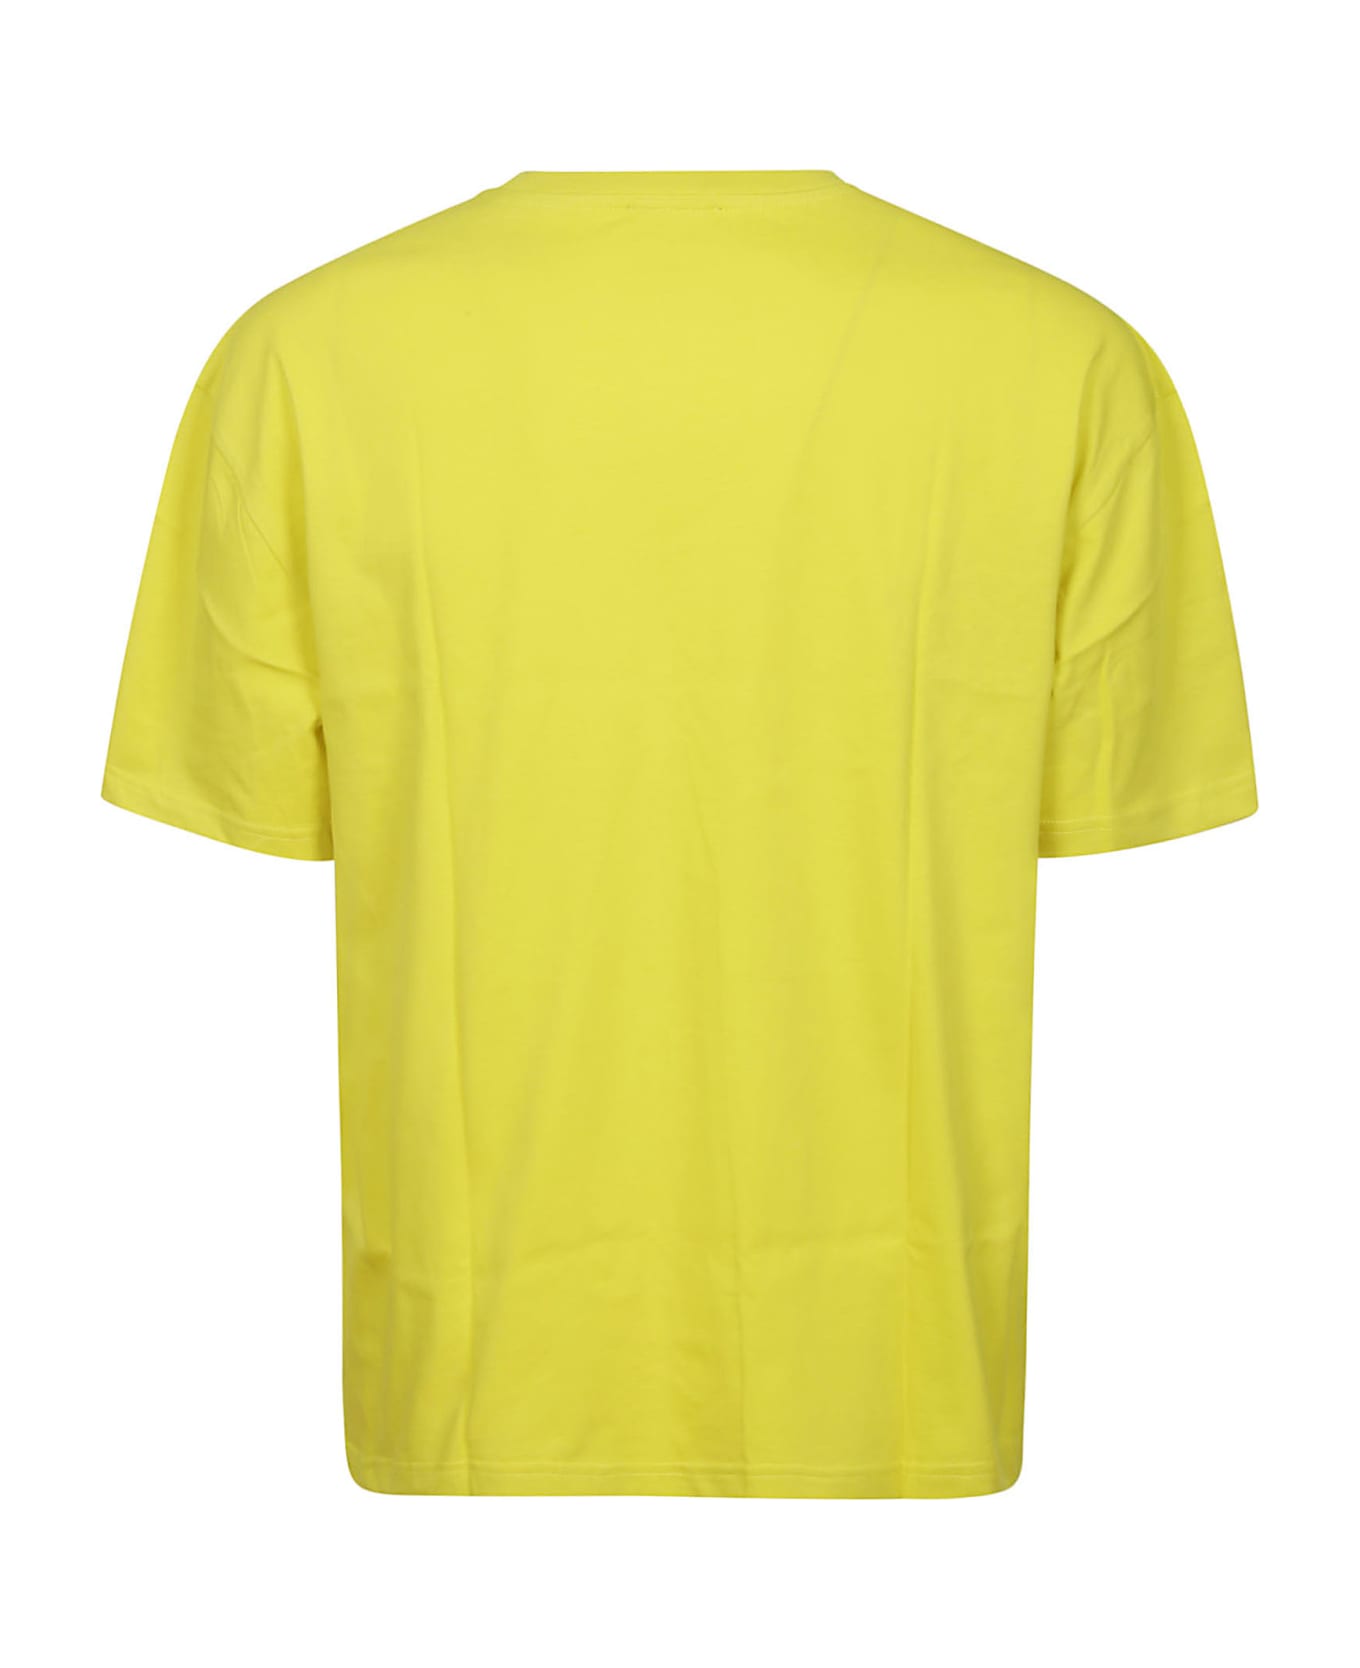 A.P.C. Joachim T-shirt - Dac Yellow